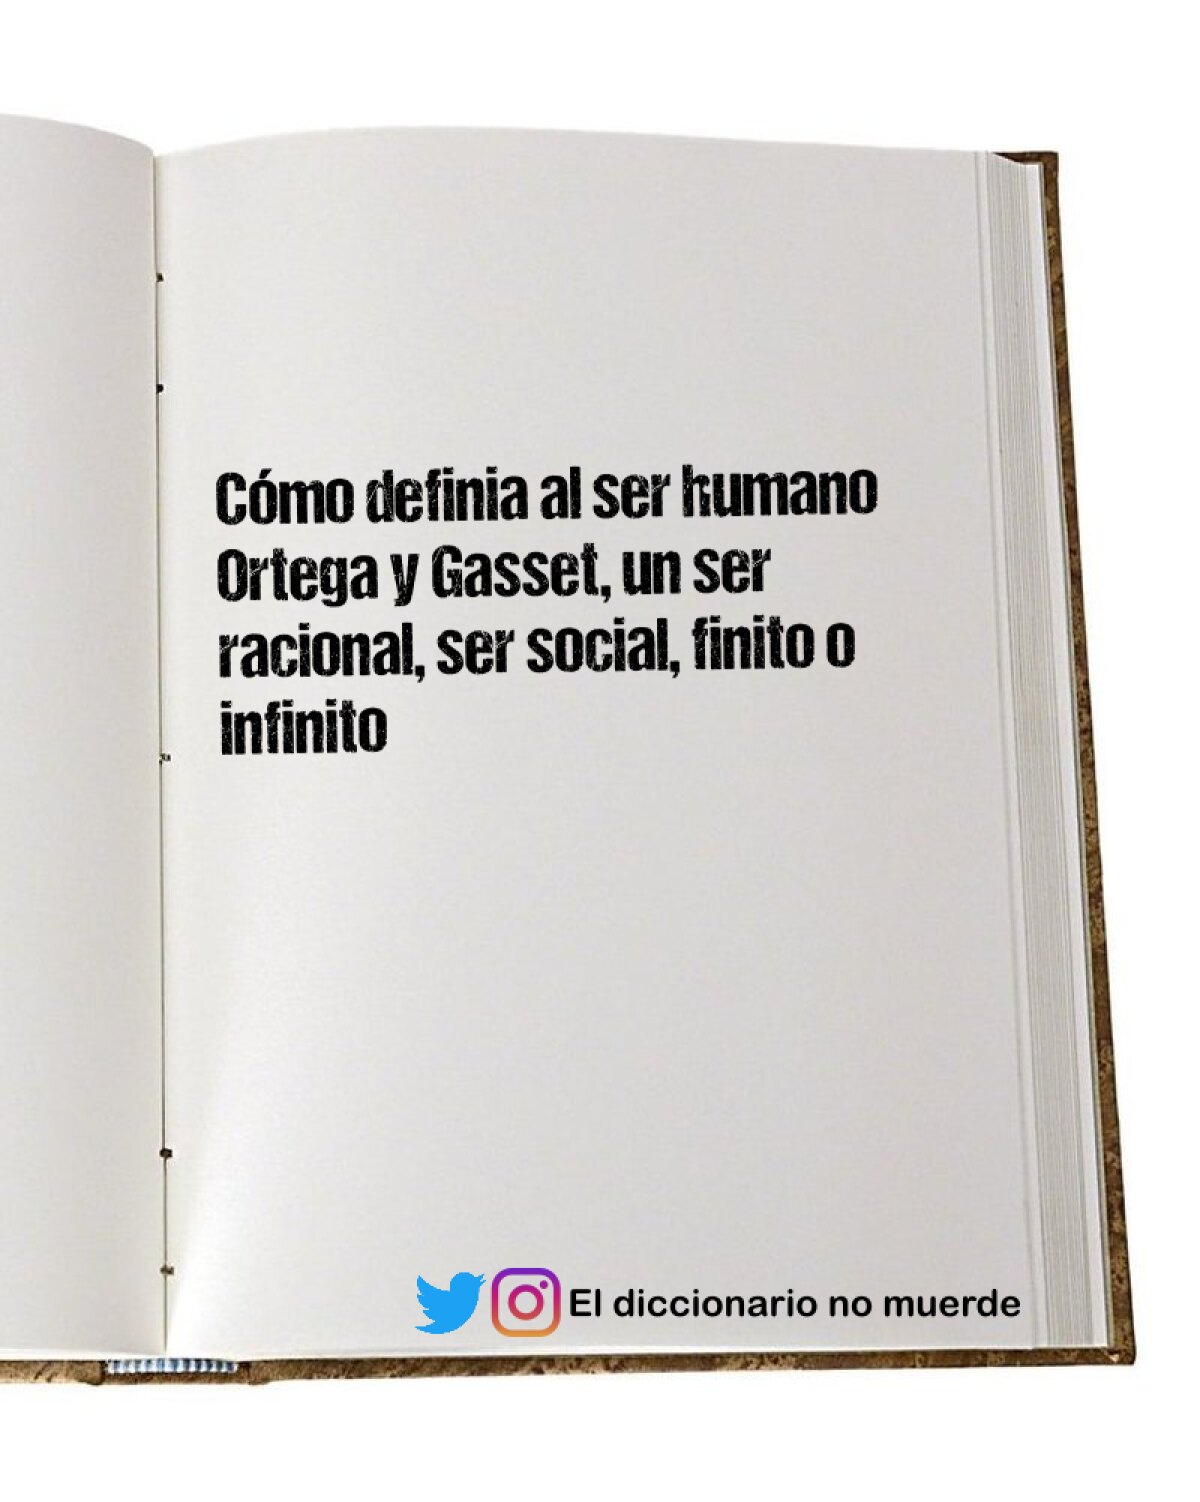 Cómo definia al ser humano Ortega y Gasset, un ser racional, ser social, finito o infinito